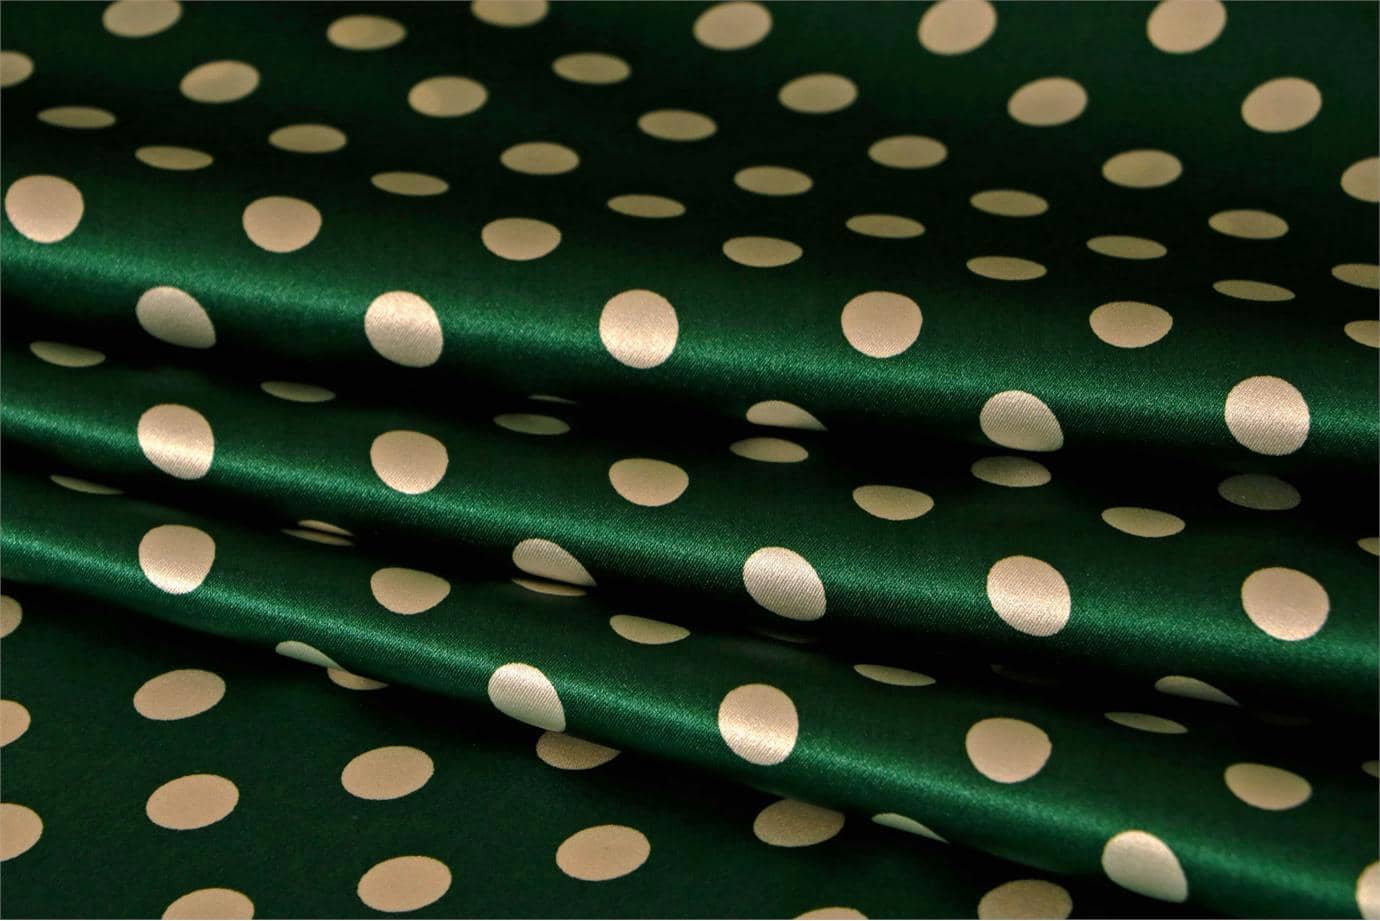 Green, White Silk Satin Polka Dot Fabric - Raso Se Omnibus Pois 201604